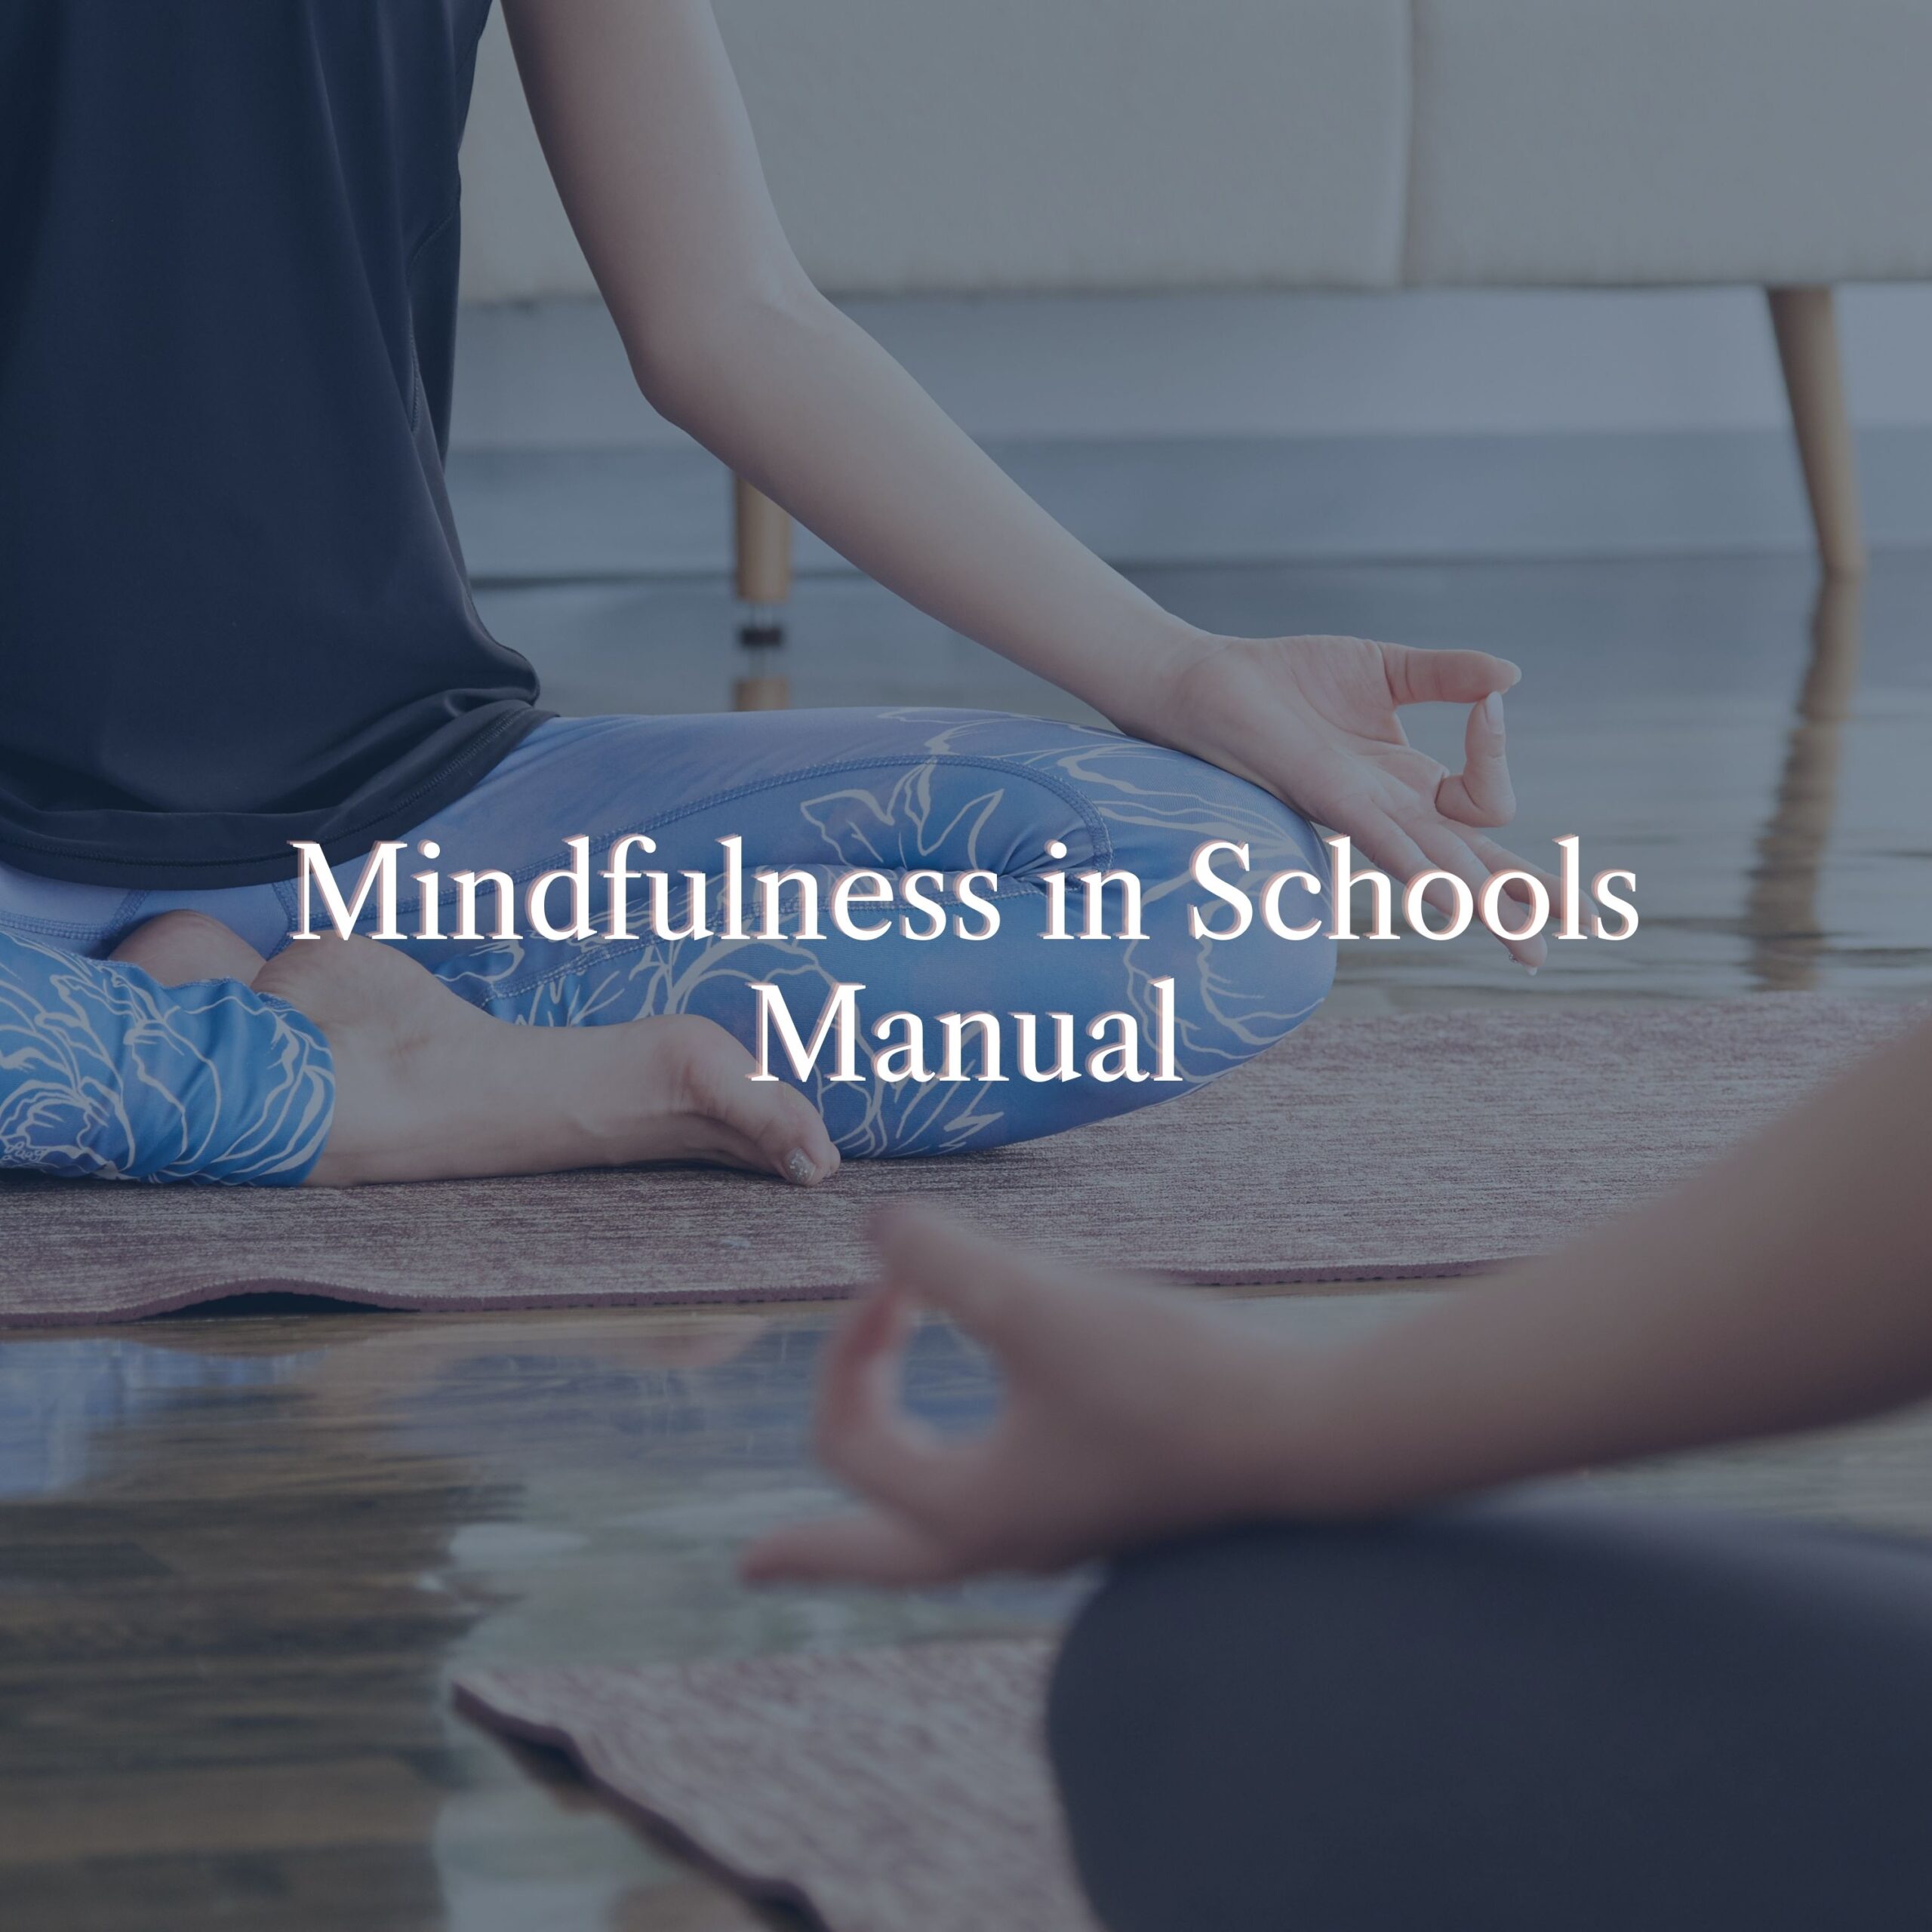 Mindfulness in Schools by Jenny Kierstead